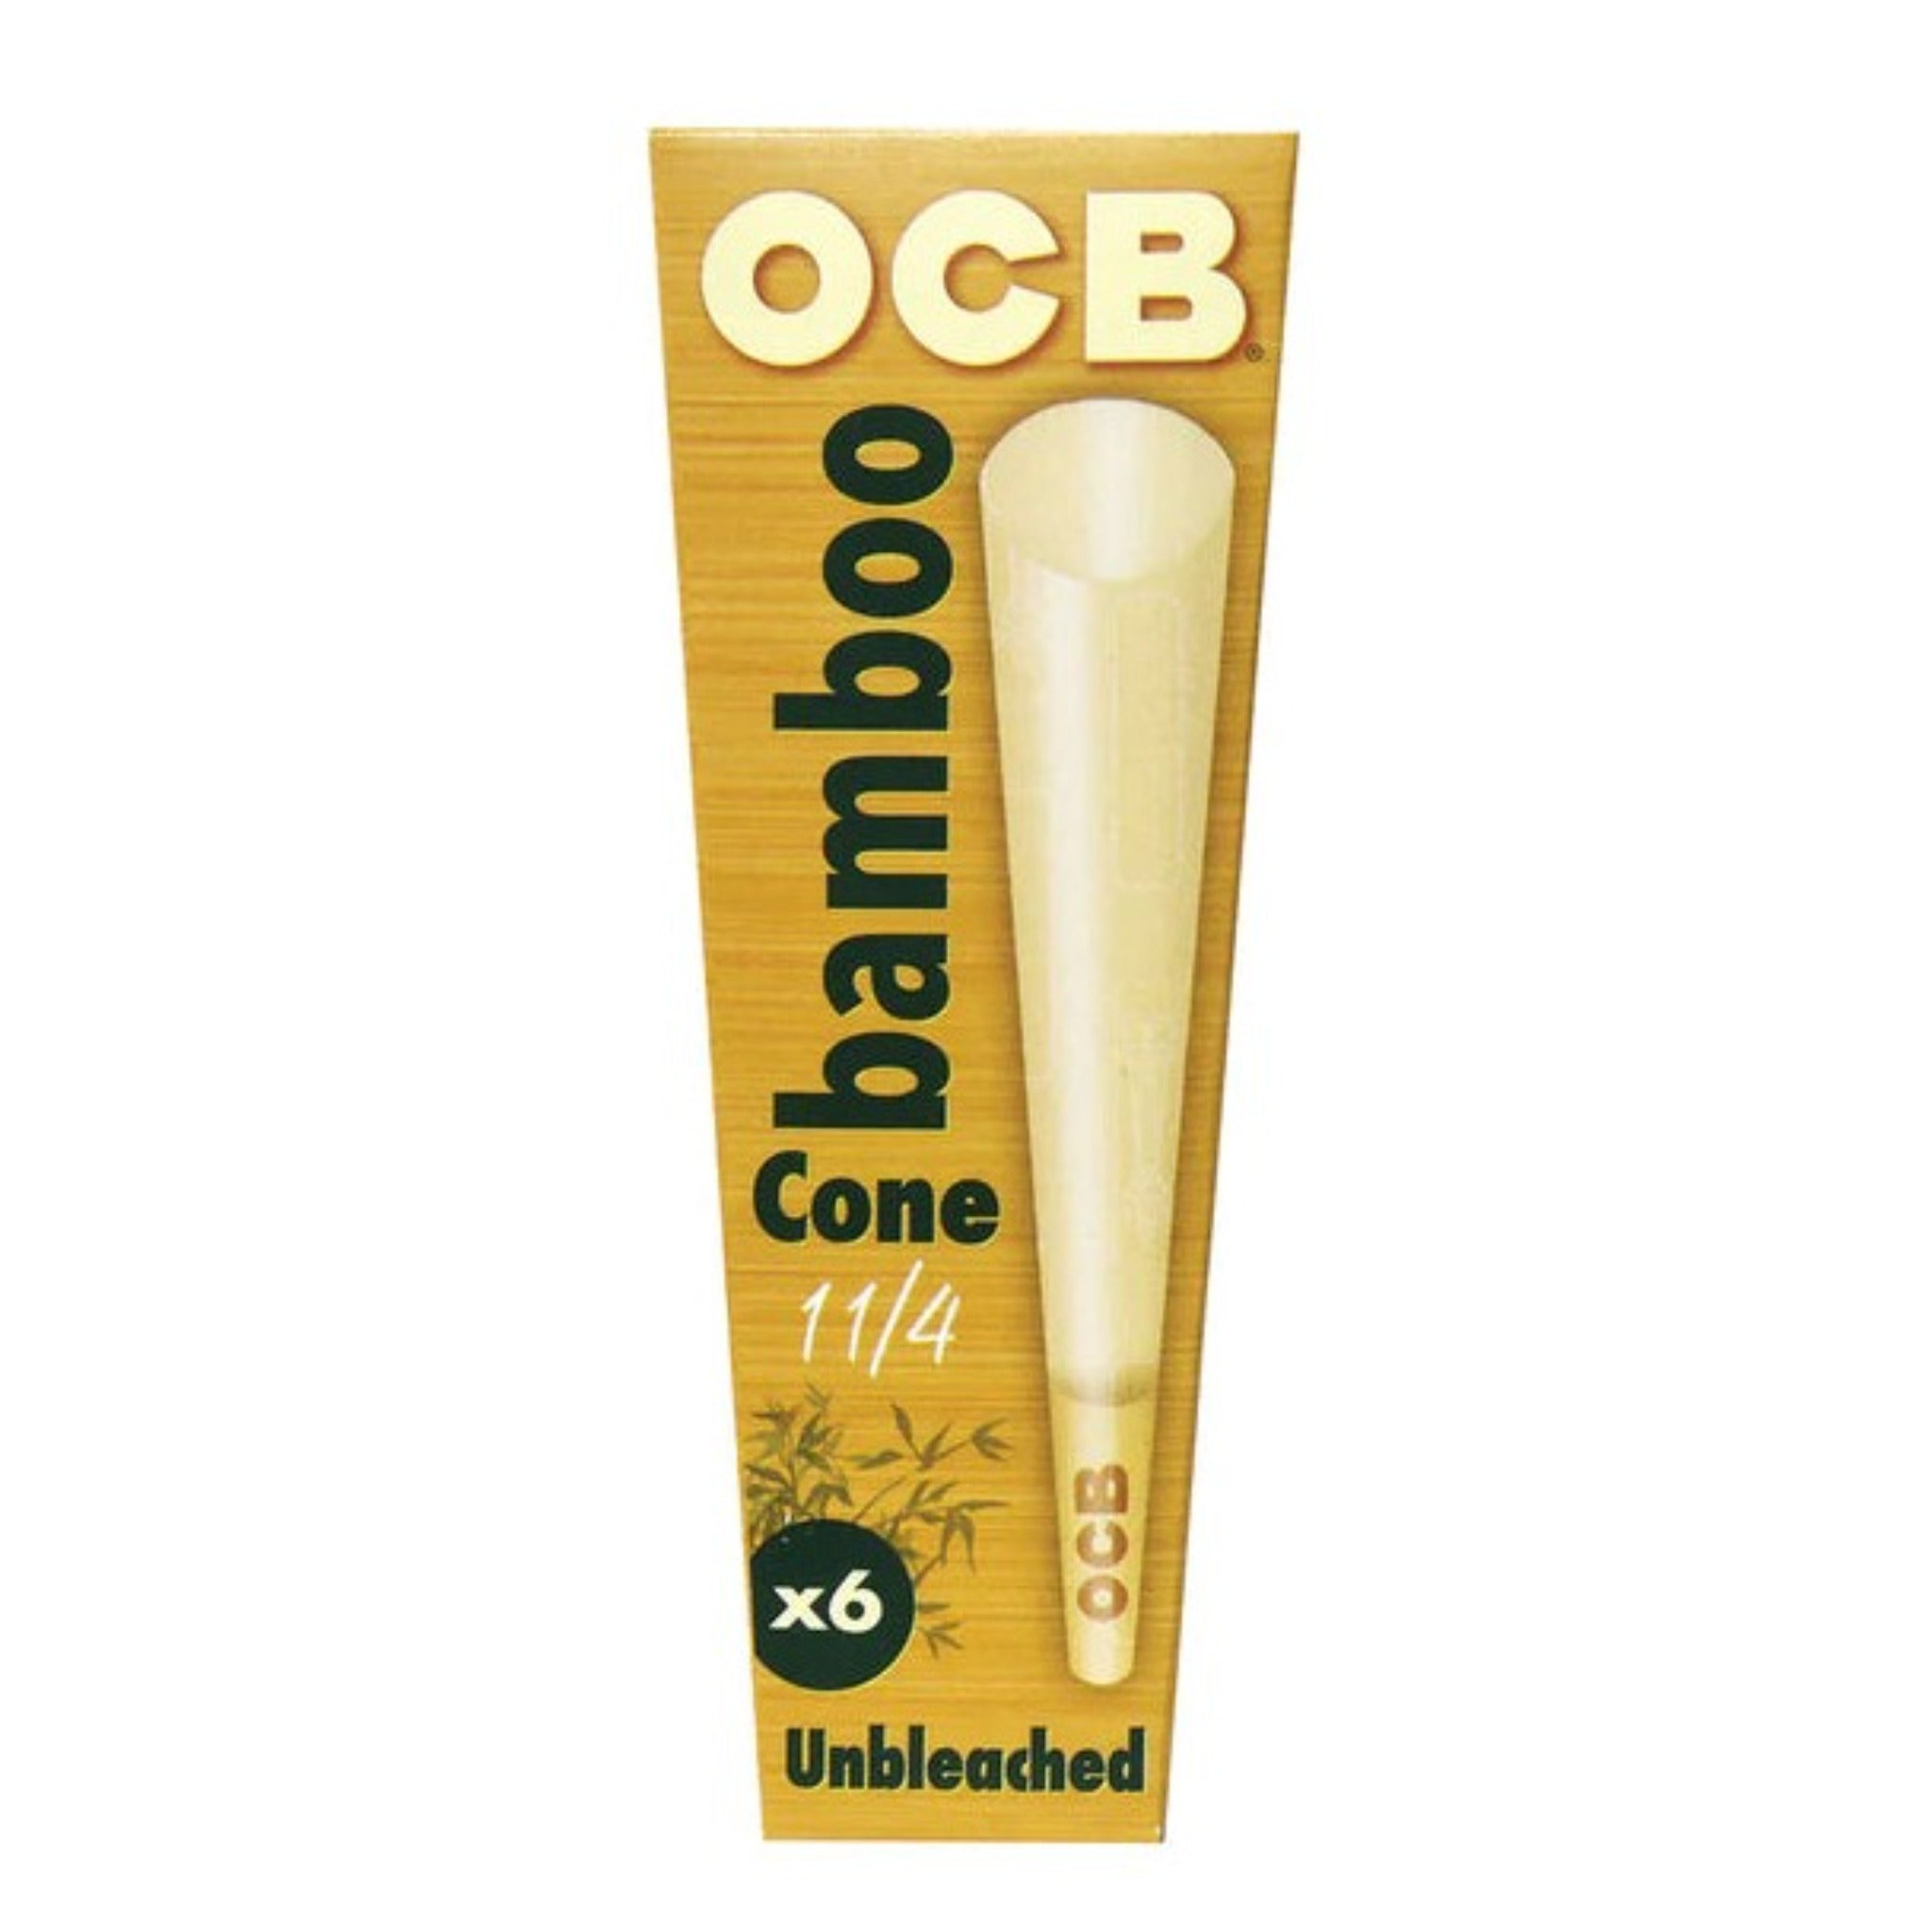 OCB Bamboo Cones Cone OCB 1 1/4 (6 Pack) 